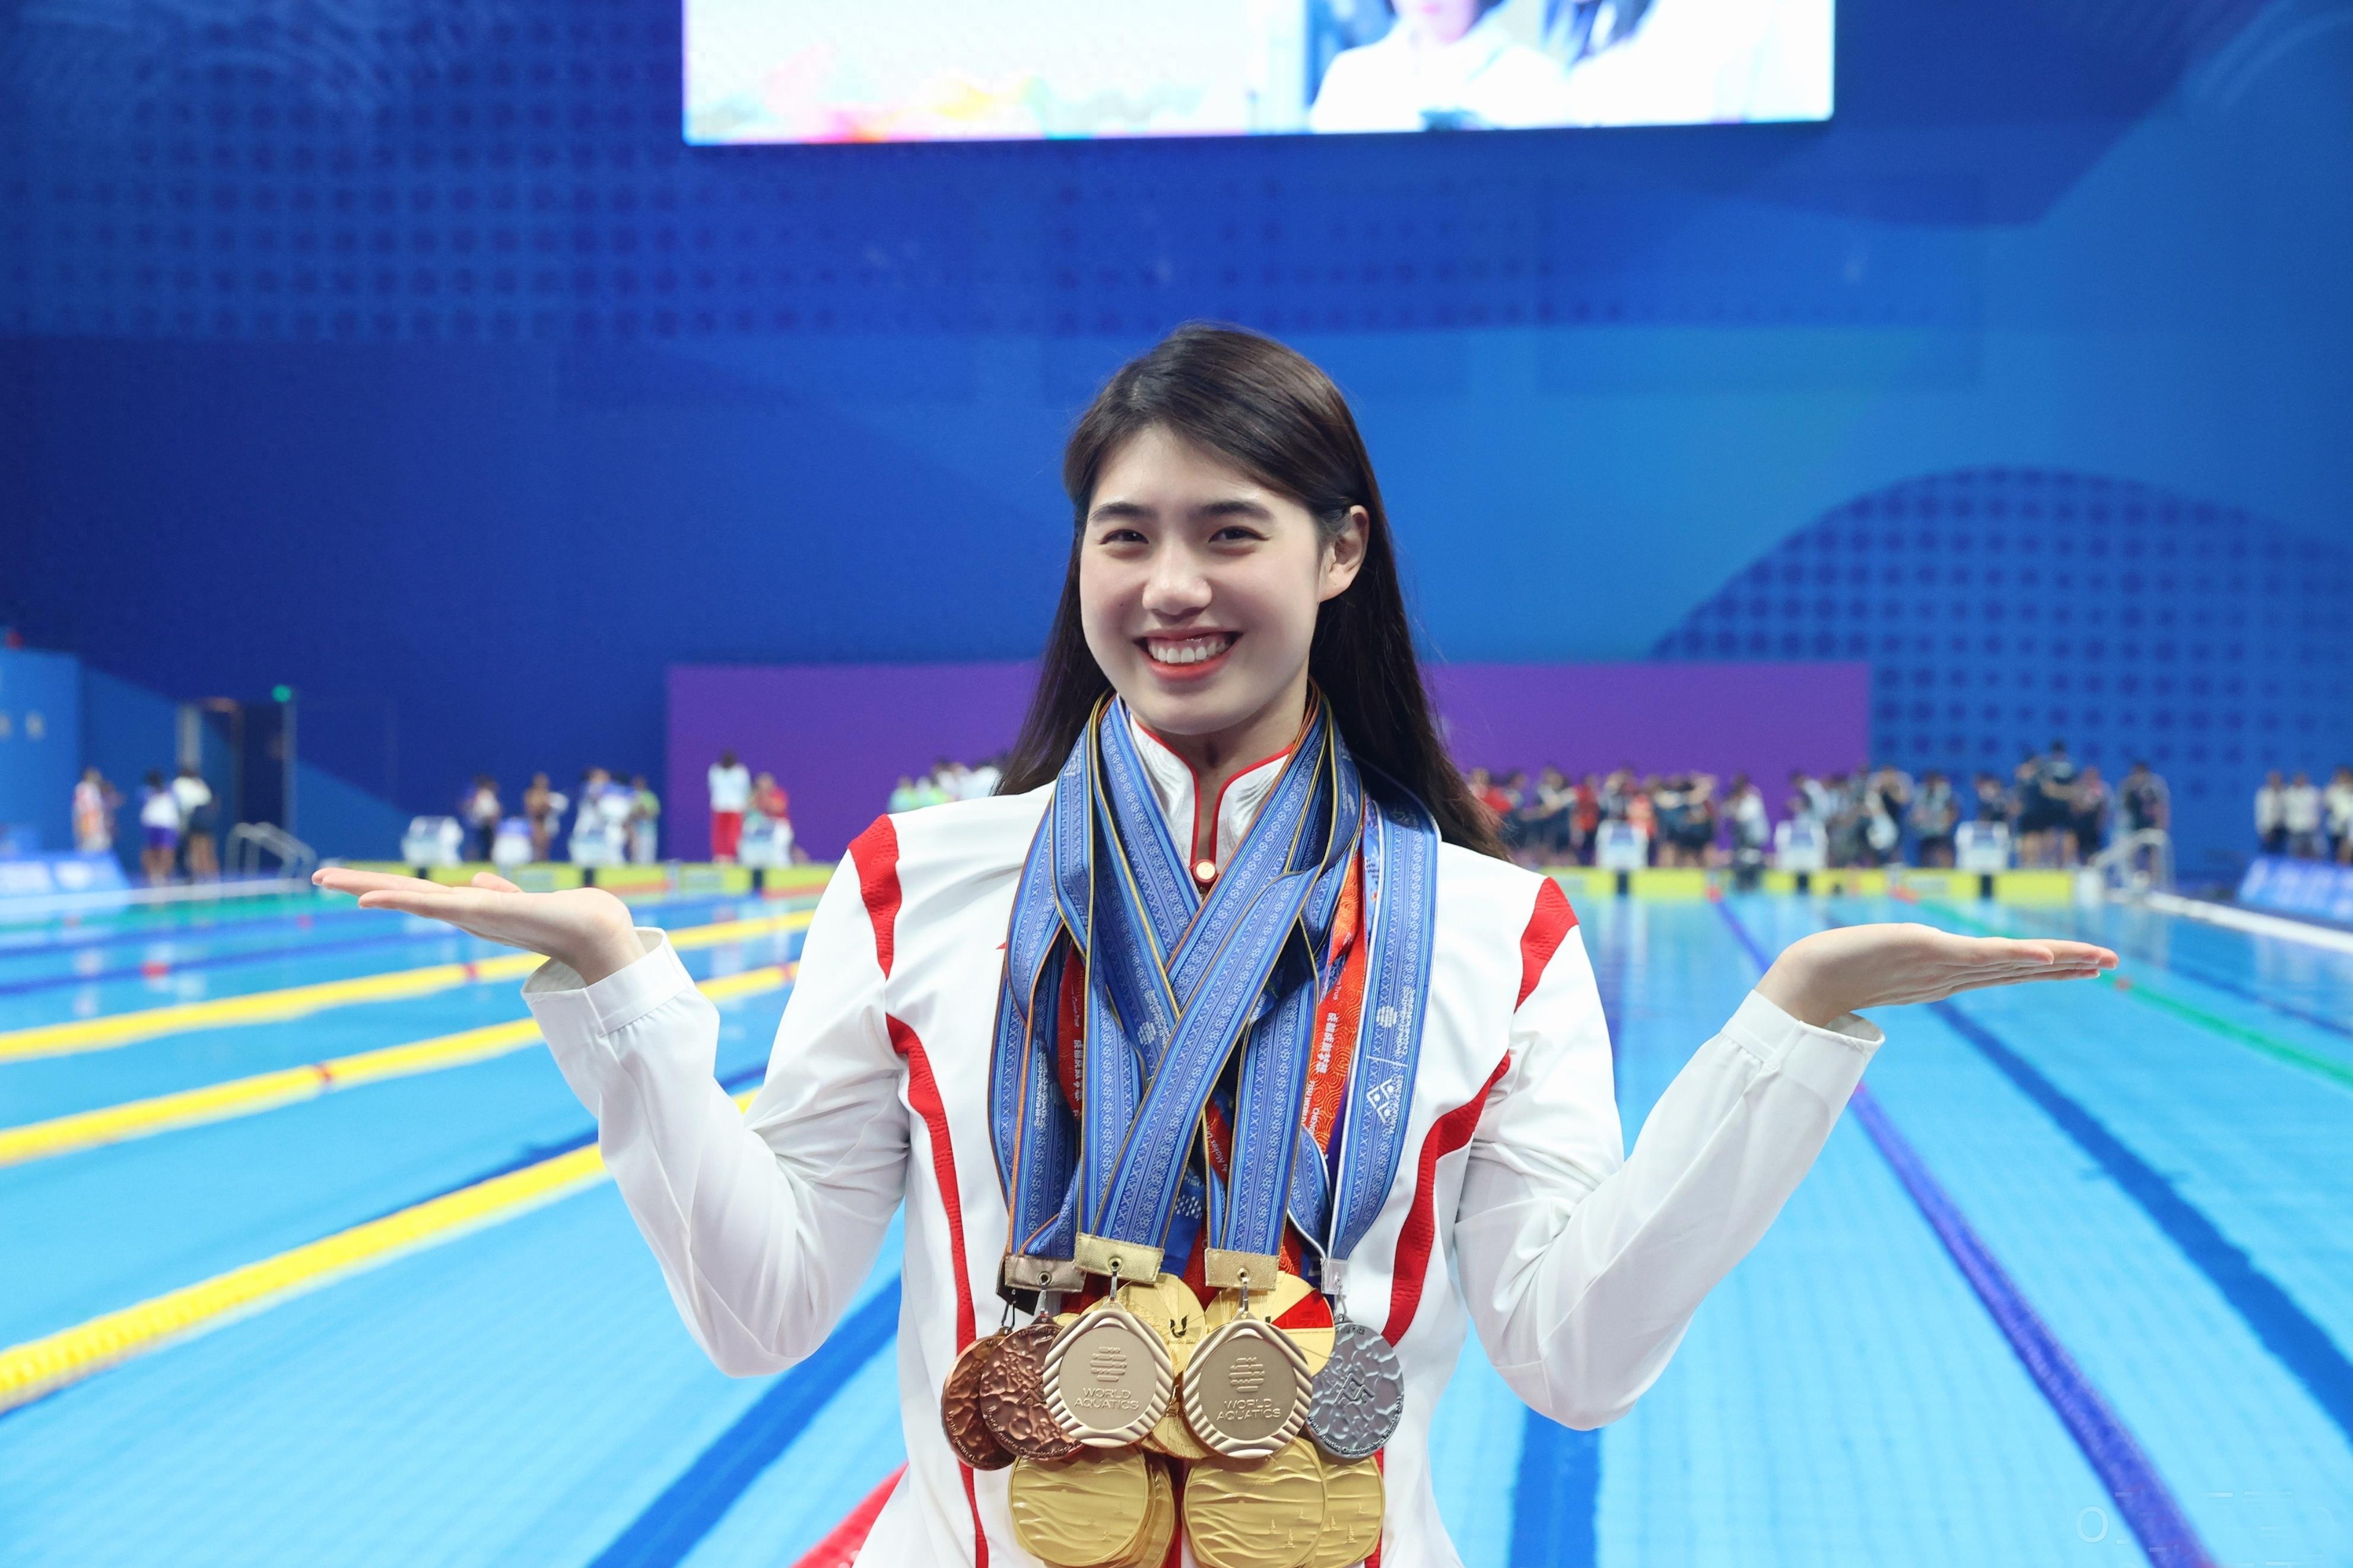 蝶后张雨霏,3岁进泳池,17岁进国家队,25岁杭州亚运会获6枚金牌